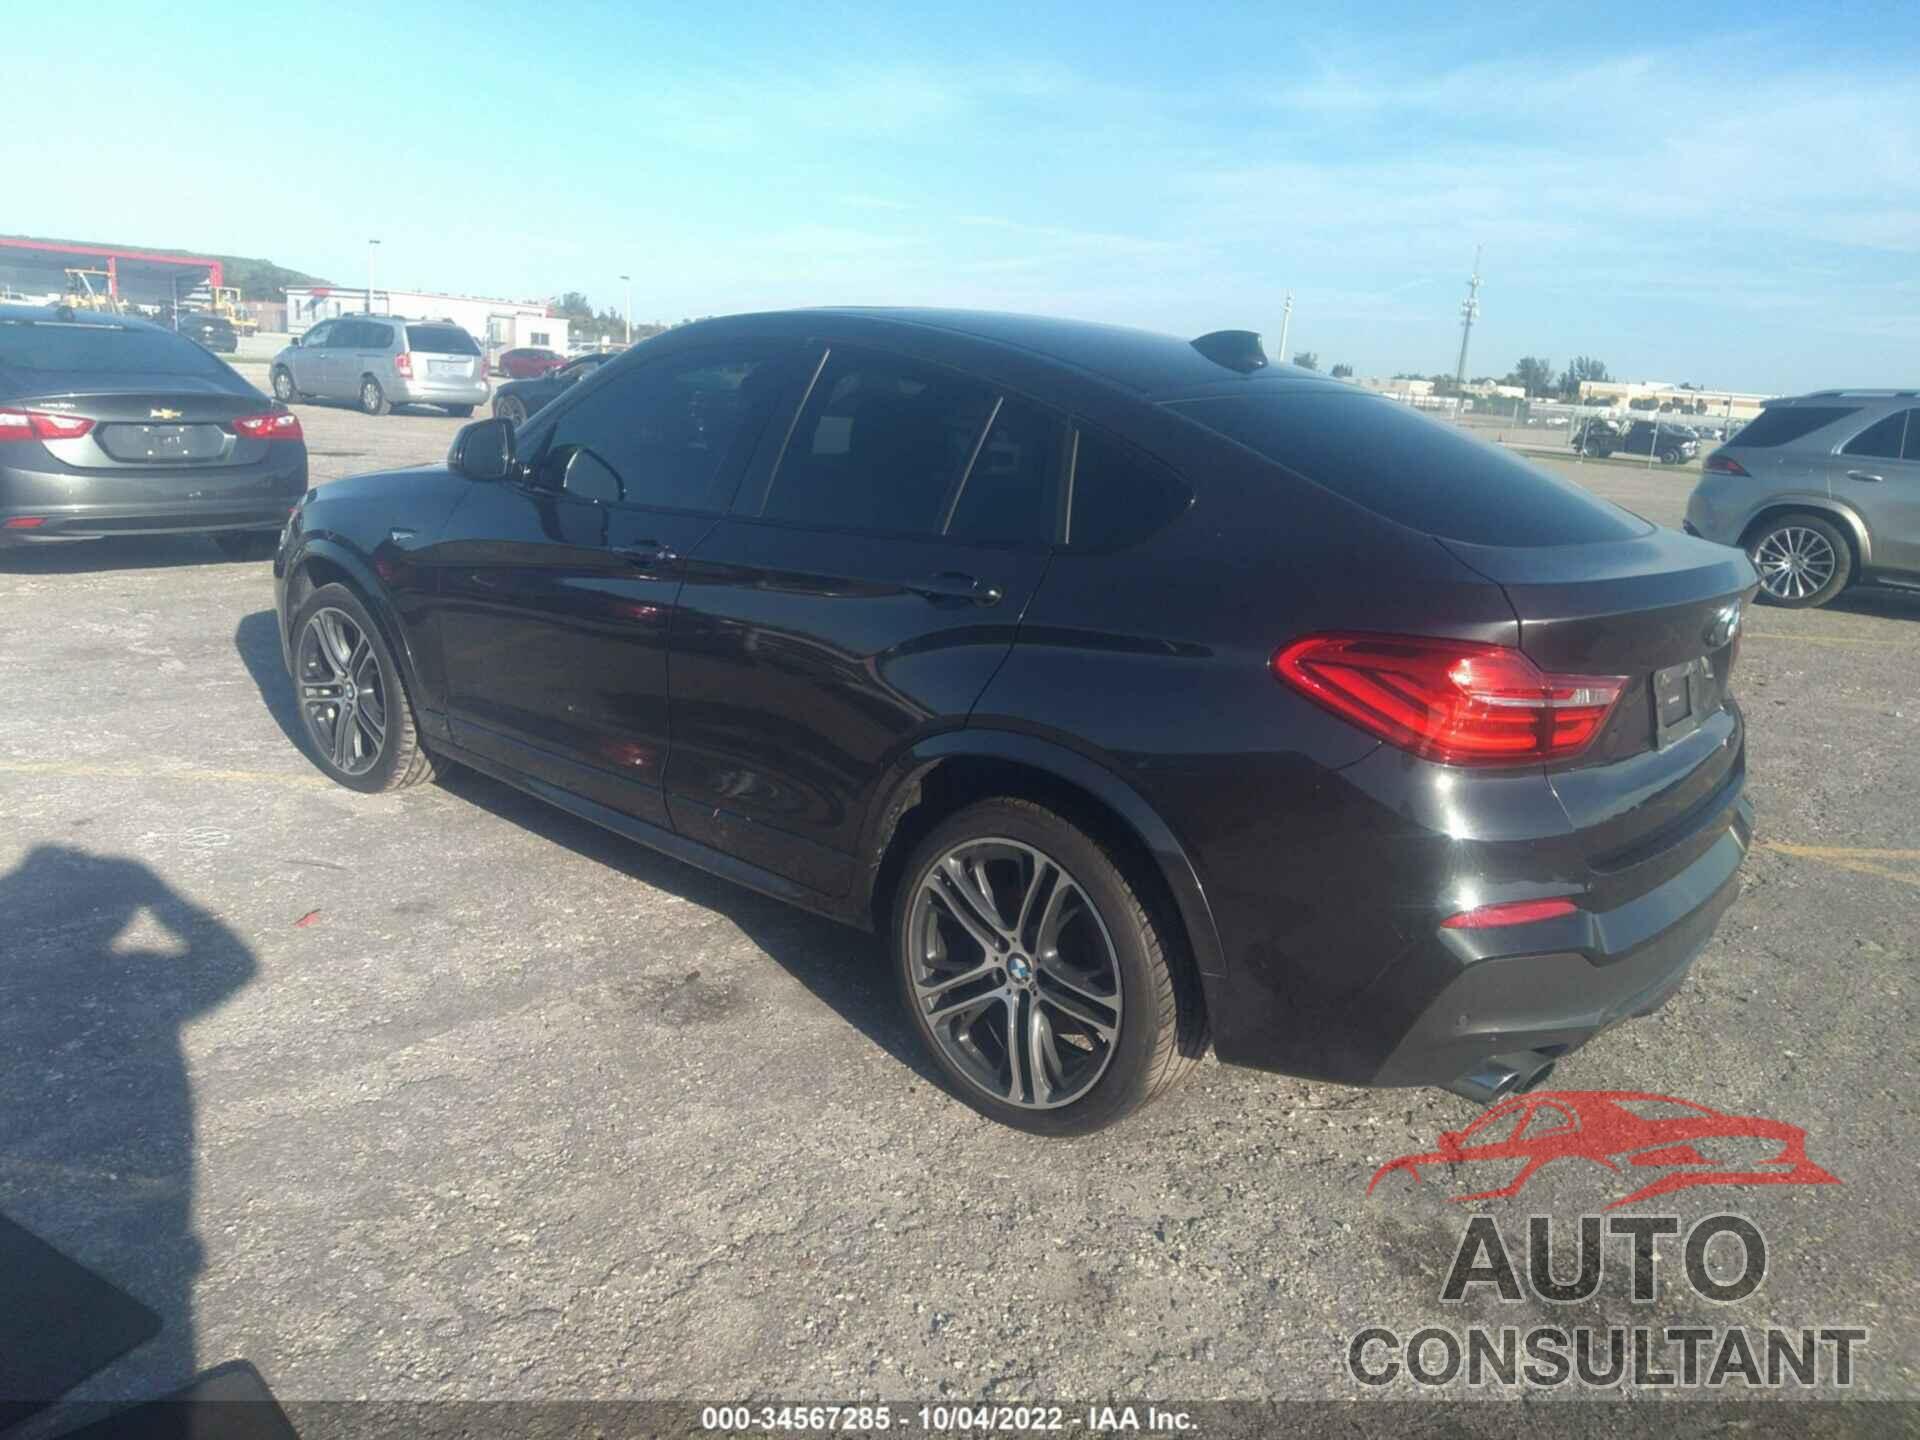 BMW X4 2016 - 5UXXW3C52G0R22543